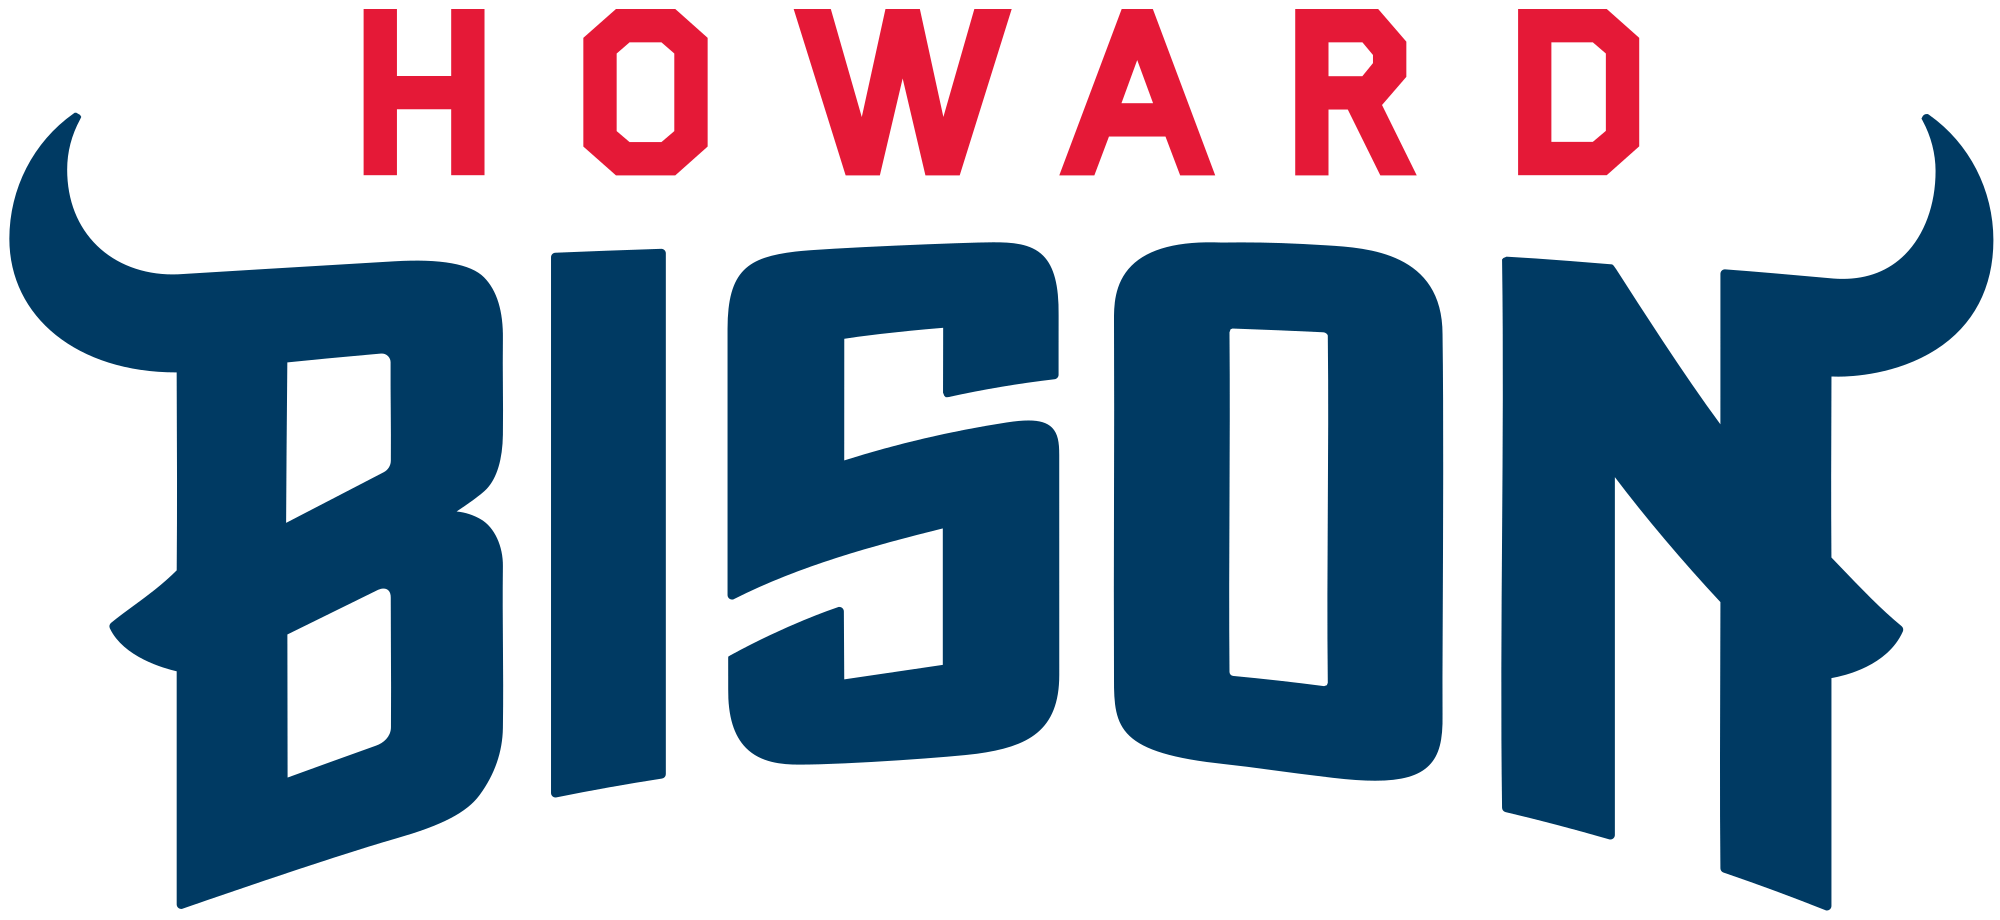 Howard Bison Logo - Howard Bison wordmark.svg